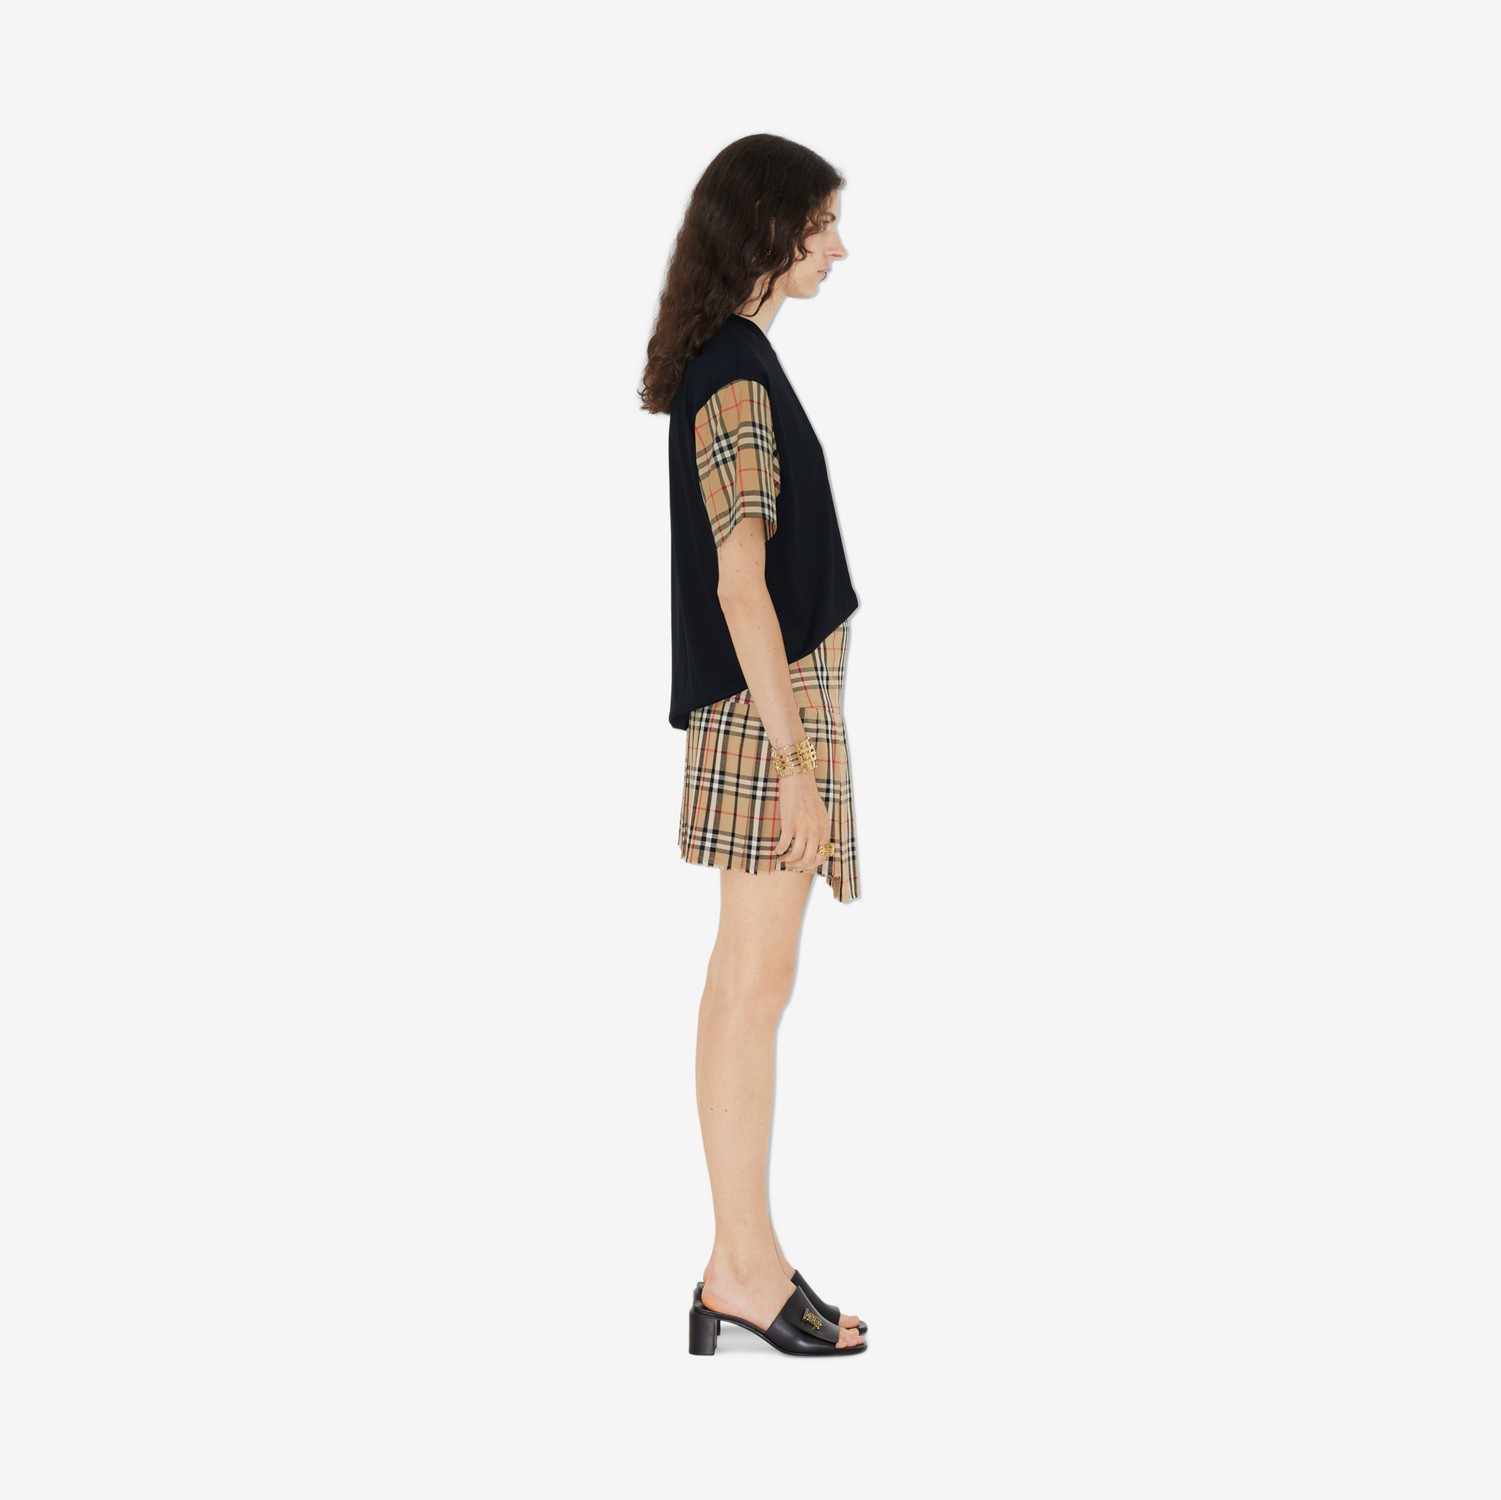 Minissaia kilt de lã Check (Bege Clássico) - Mulheres | Burberry® oficial